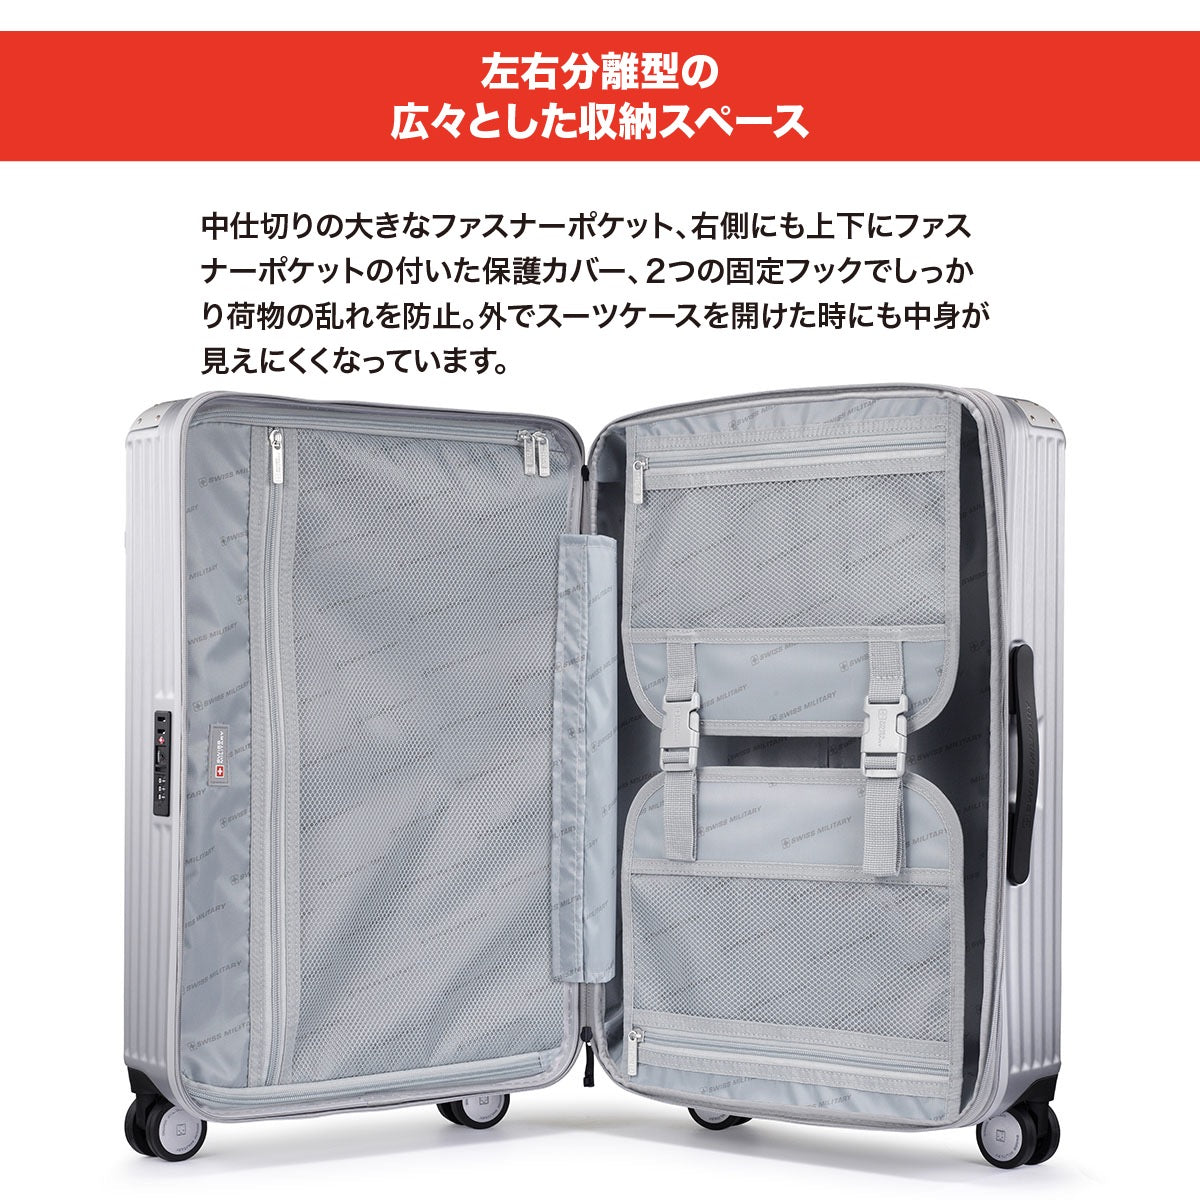 【予約:2月23日発売】スーツケース Lサイズ 一週間以上 71cm SOGLIO(ソーリオ) バニラホワイト 【内装アップグレード版】